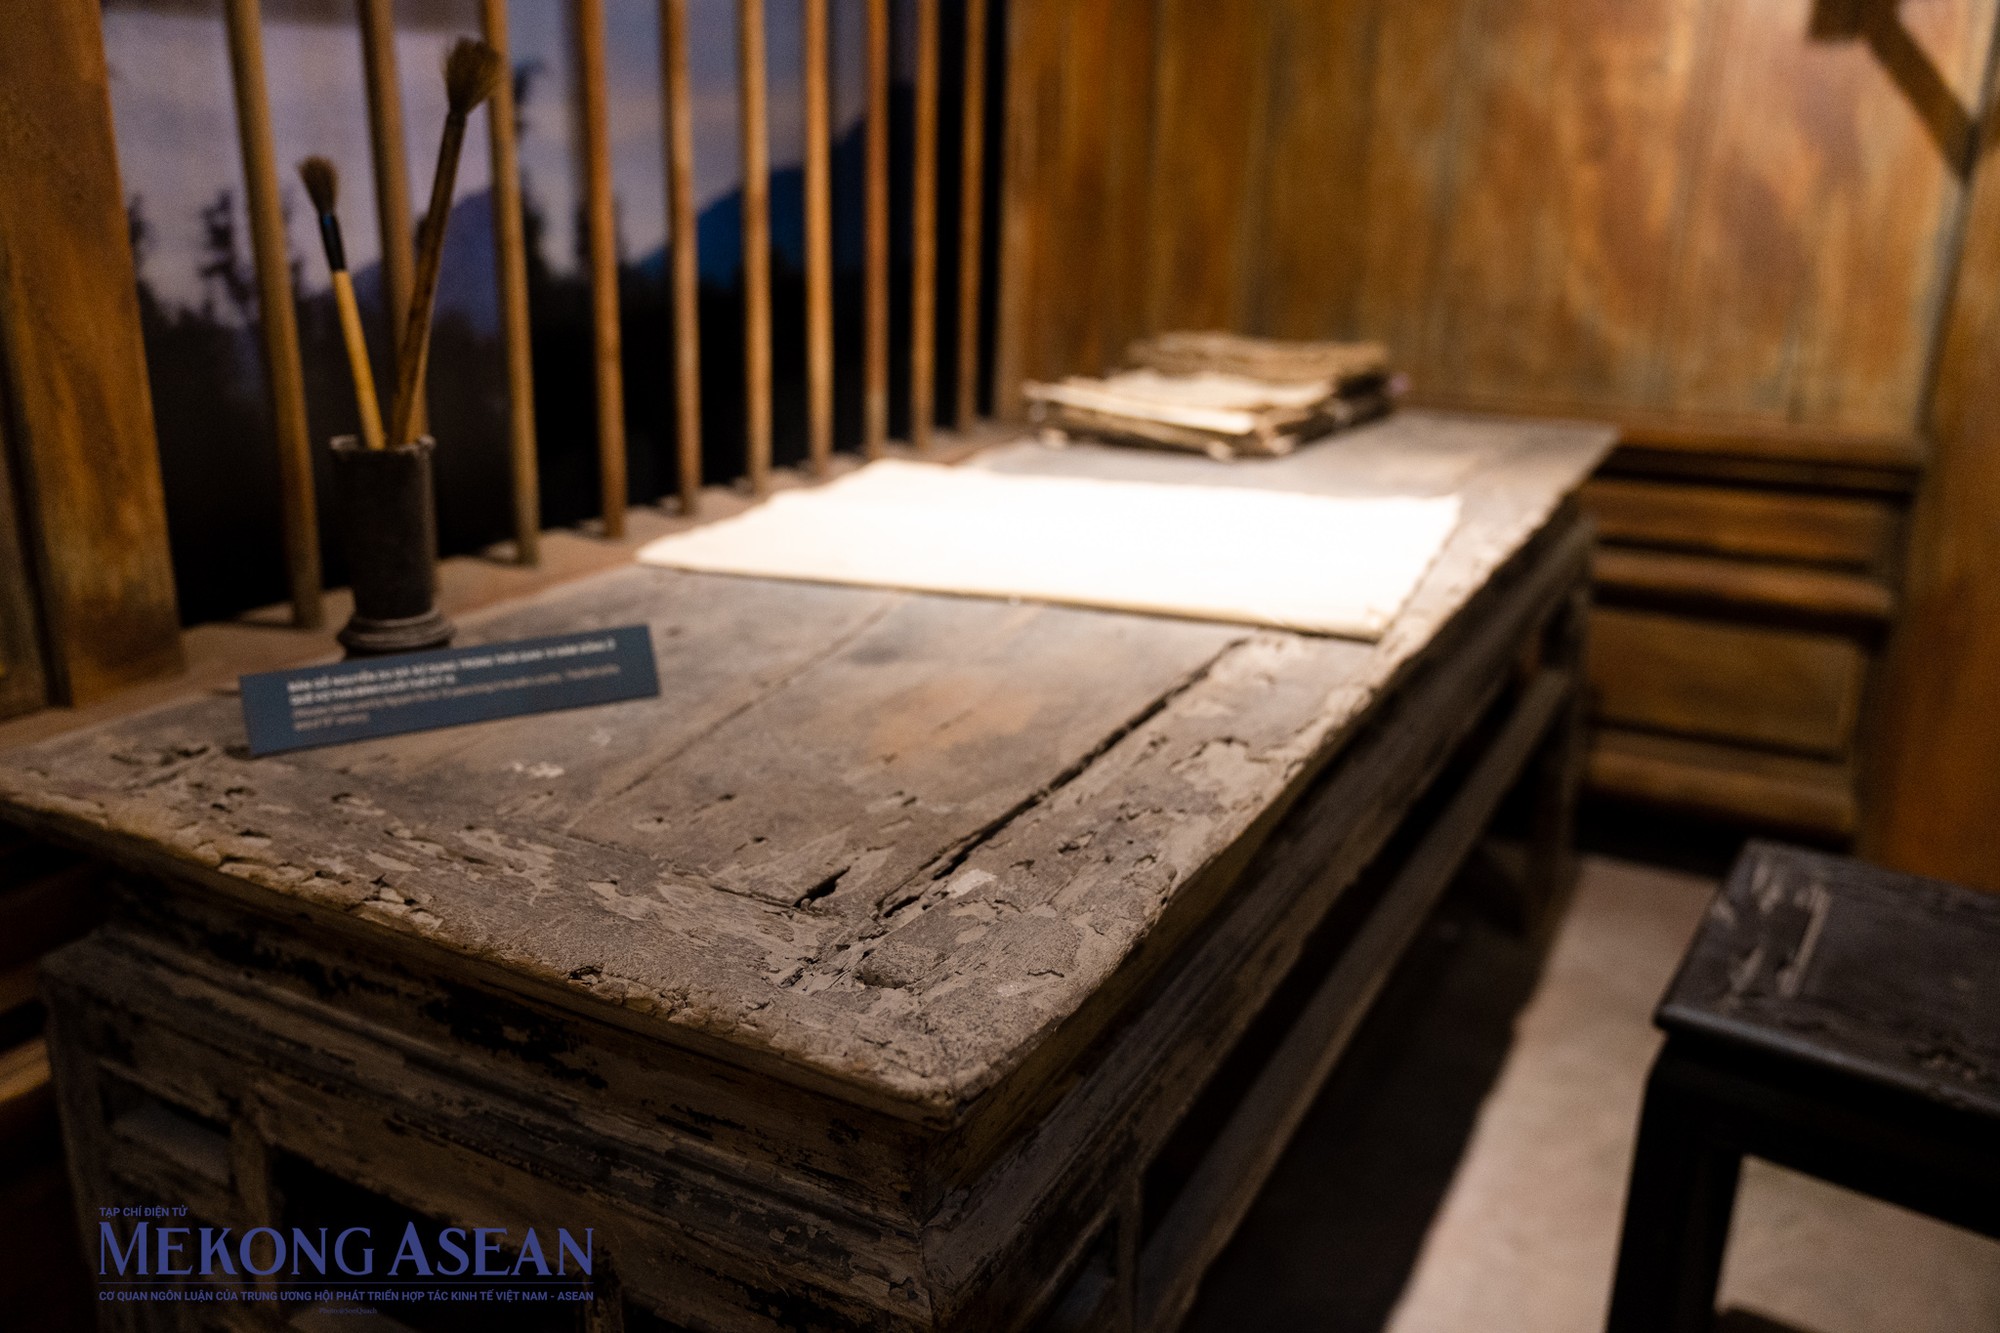 Những hiện vật quý báu của những nhà văn, nhà thơ cũng được trưng bày và bảo quản hết sức tỉ mỉ. Đây là chiếc bàn gỗ đại thi hào Nguyễn Du đã sử dụng trong thời gian 10 năm sống ở quê vợ Thái Bình cuối thế kỷ 18.